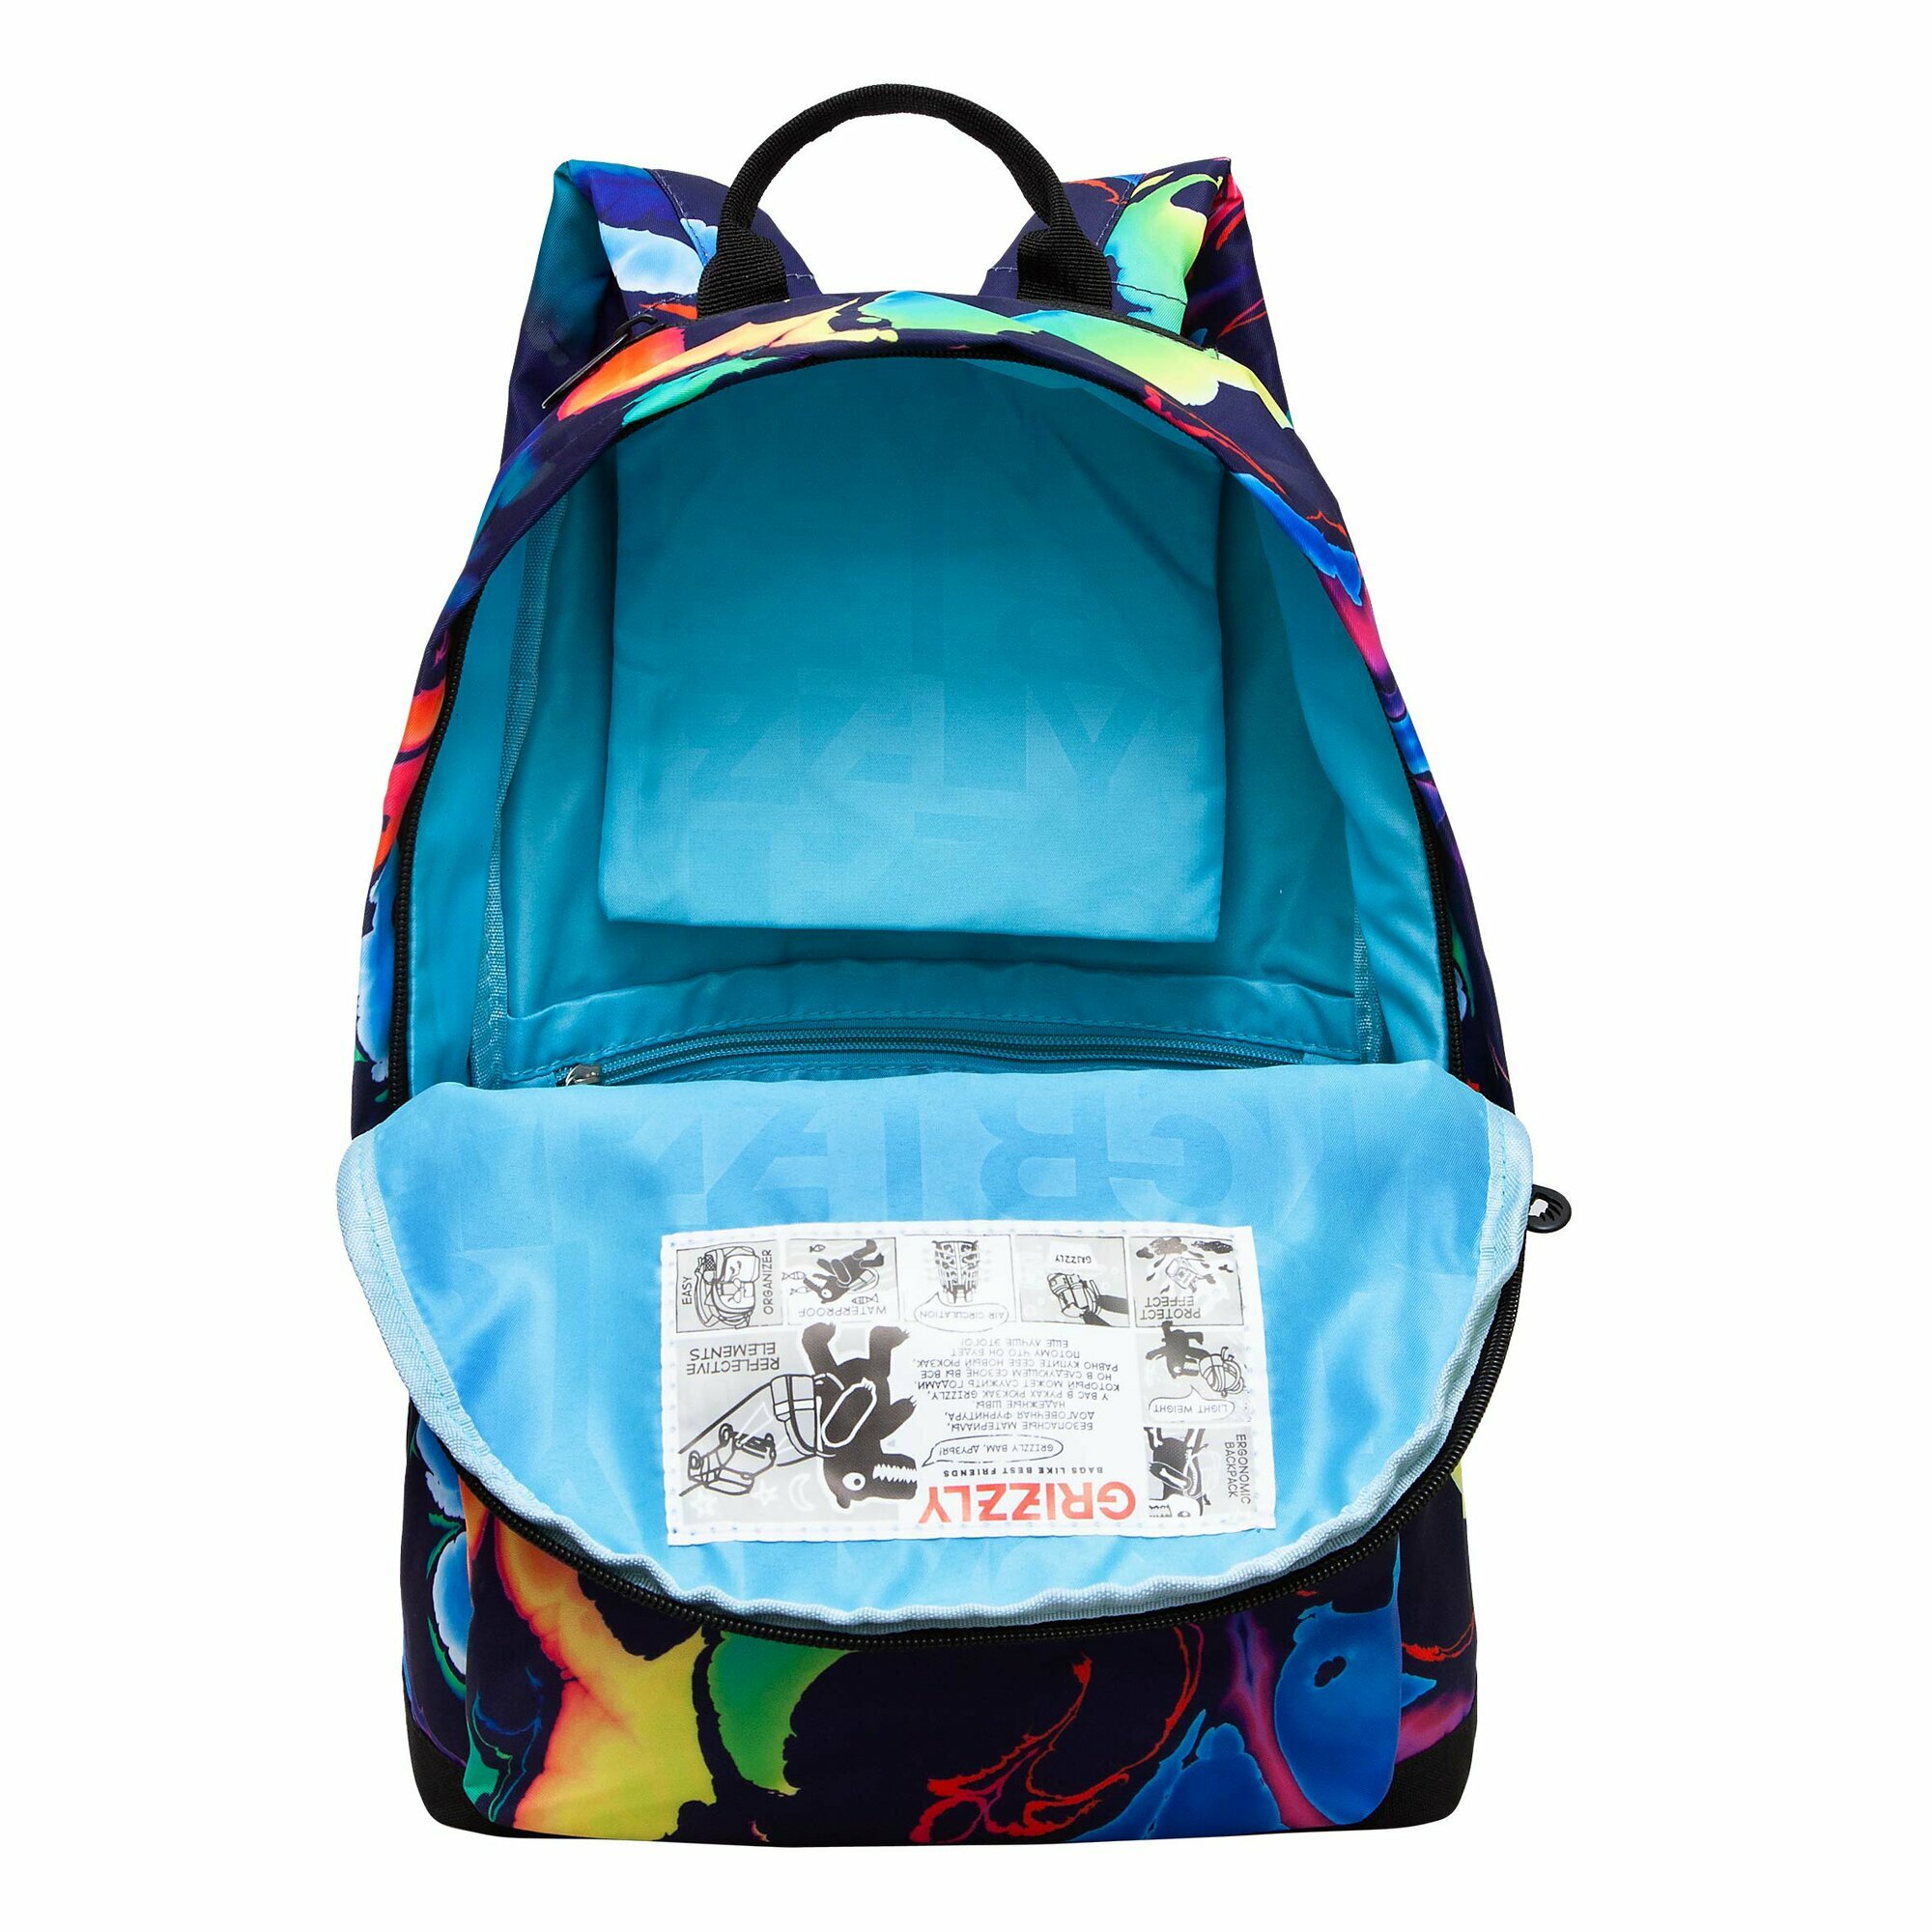 Рюкзак городской GRIZZLY с карманом для ноутбука 13", одним отделением, размер M, женский RXL-323-5/1